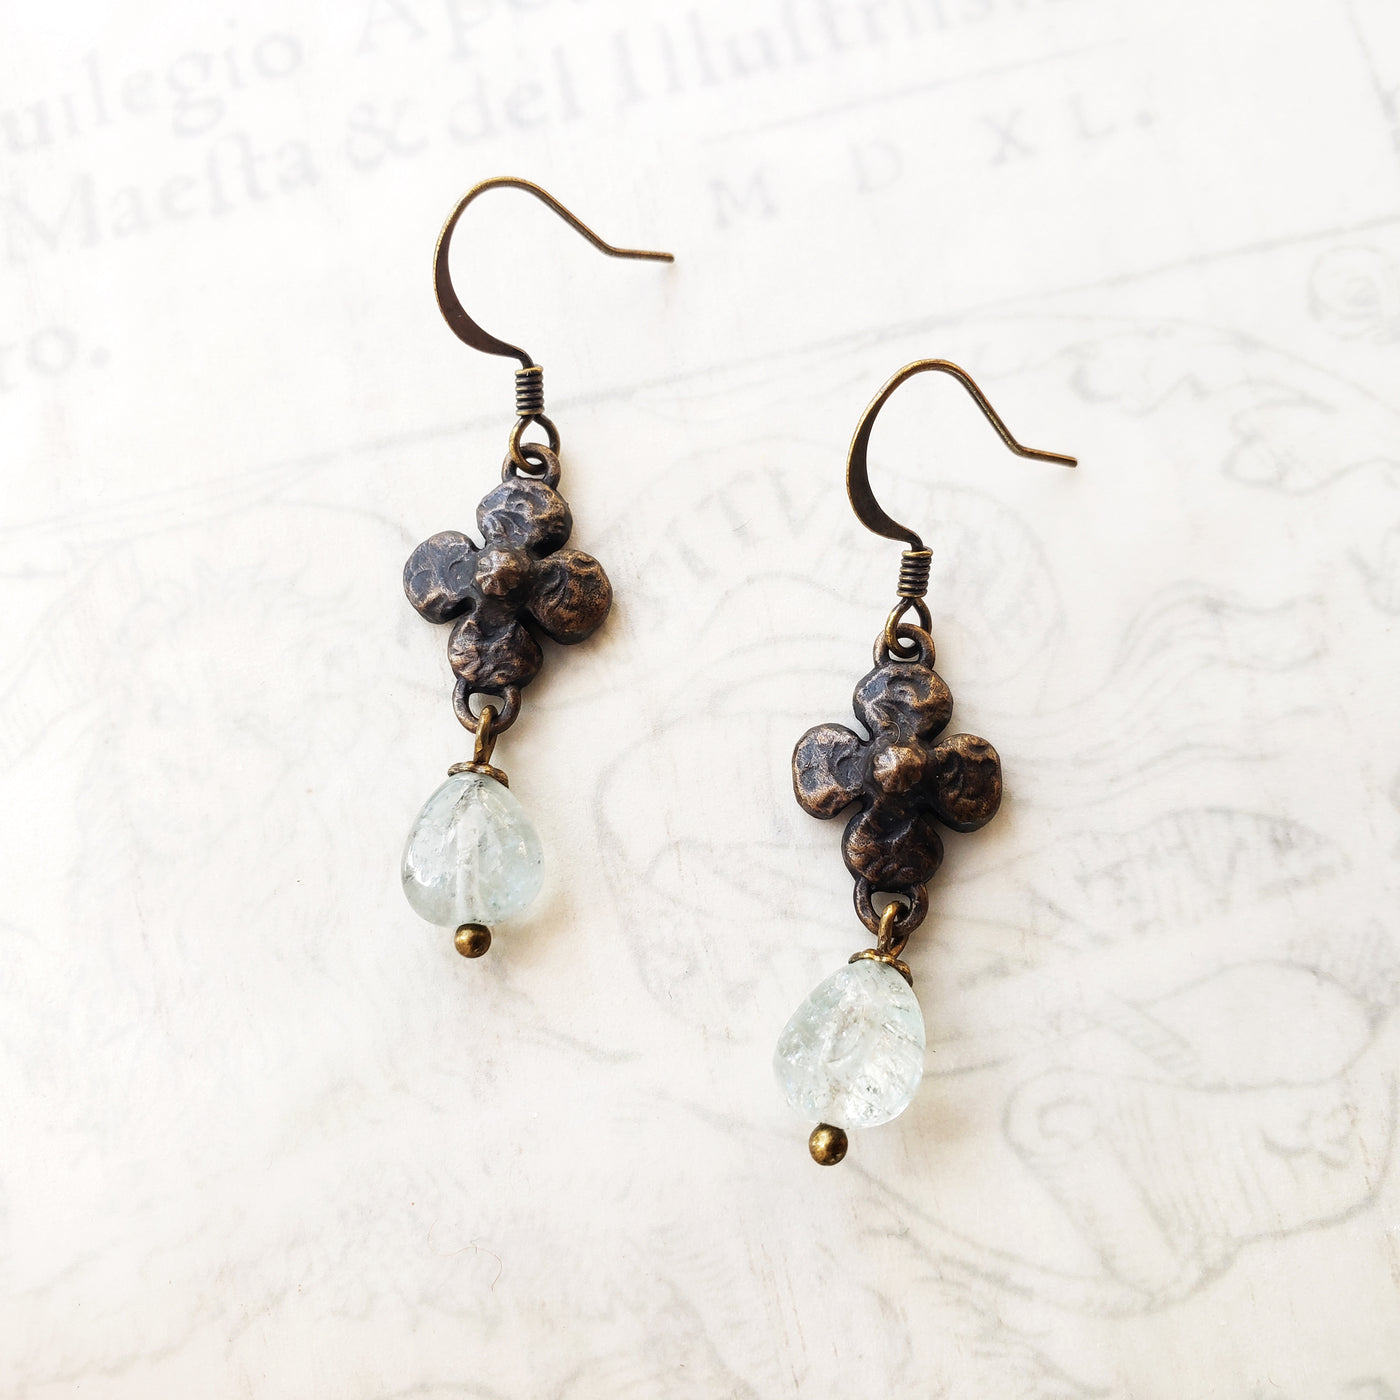 clover earrings : aquamarine & antiqued bronze